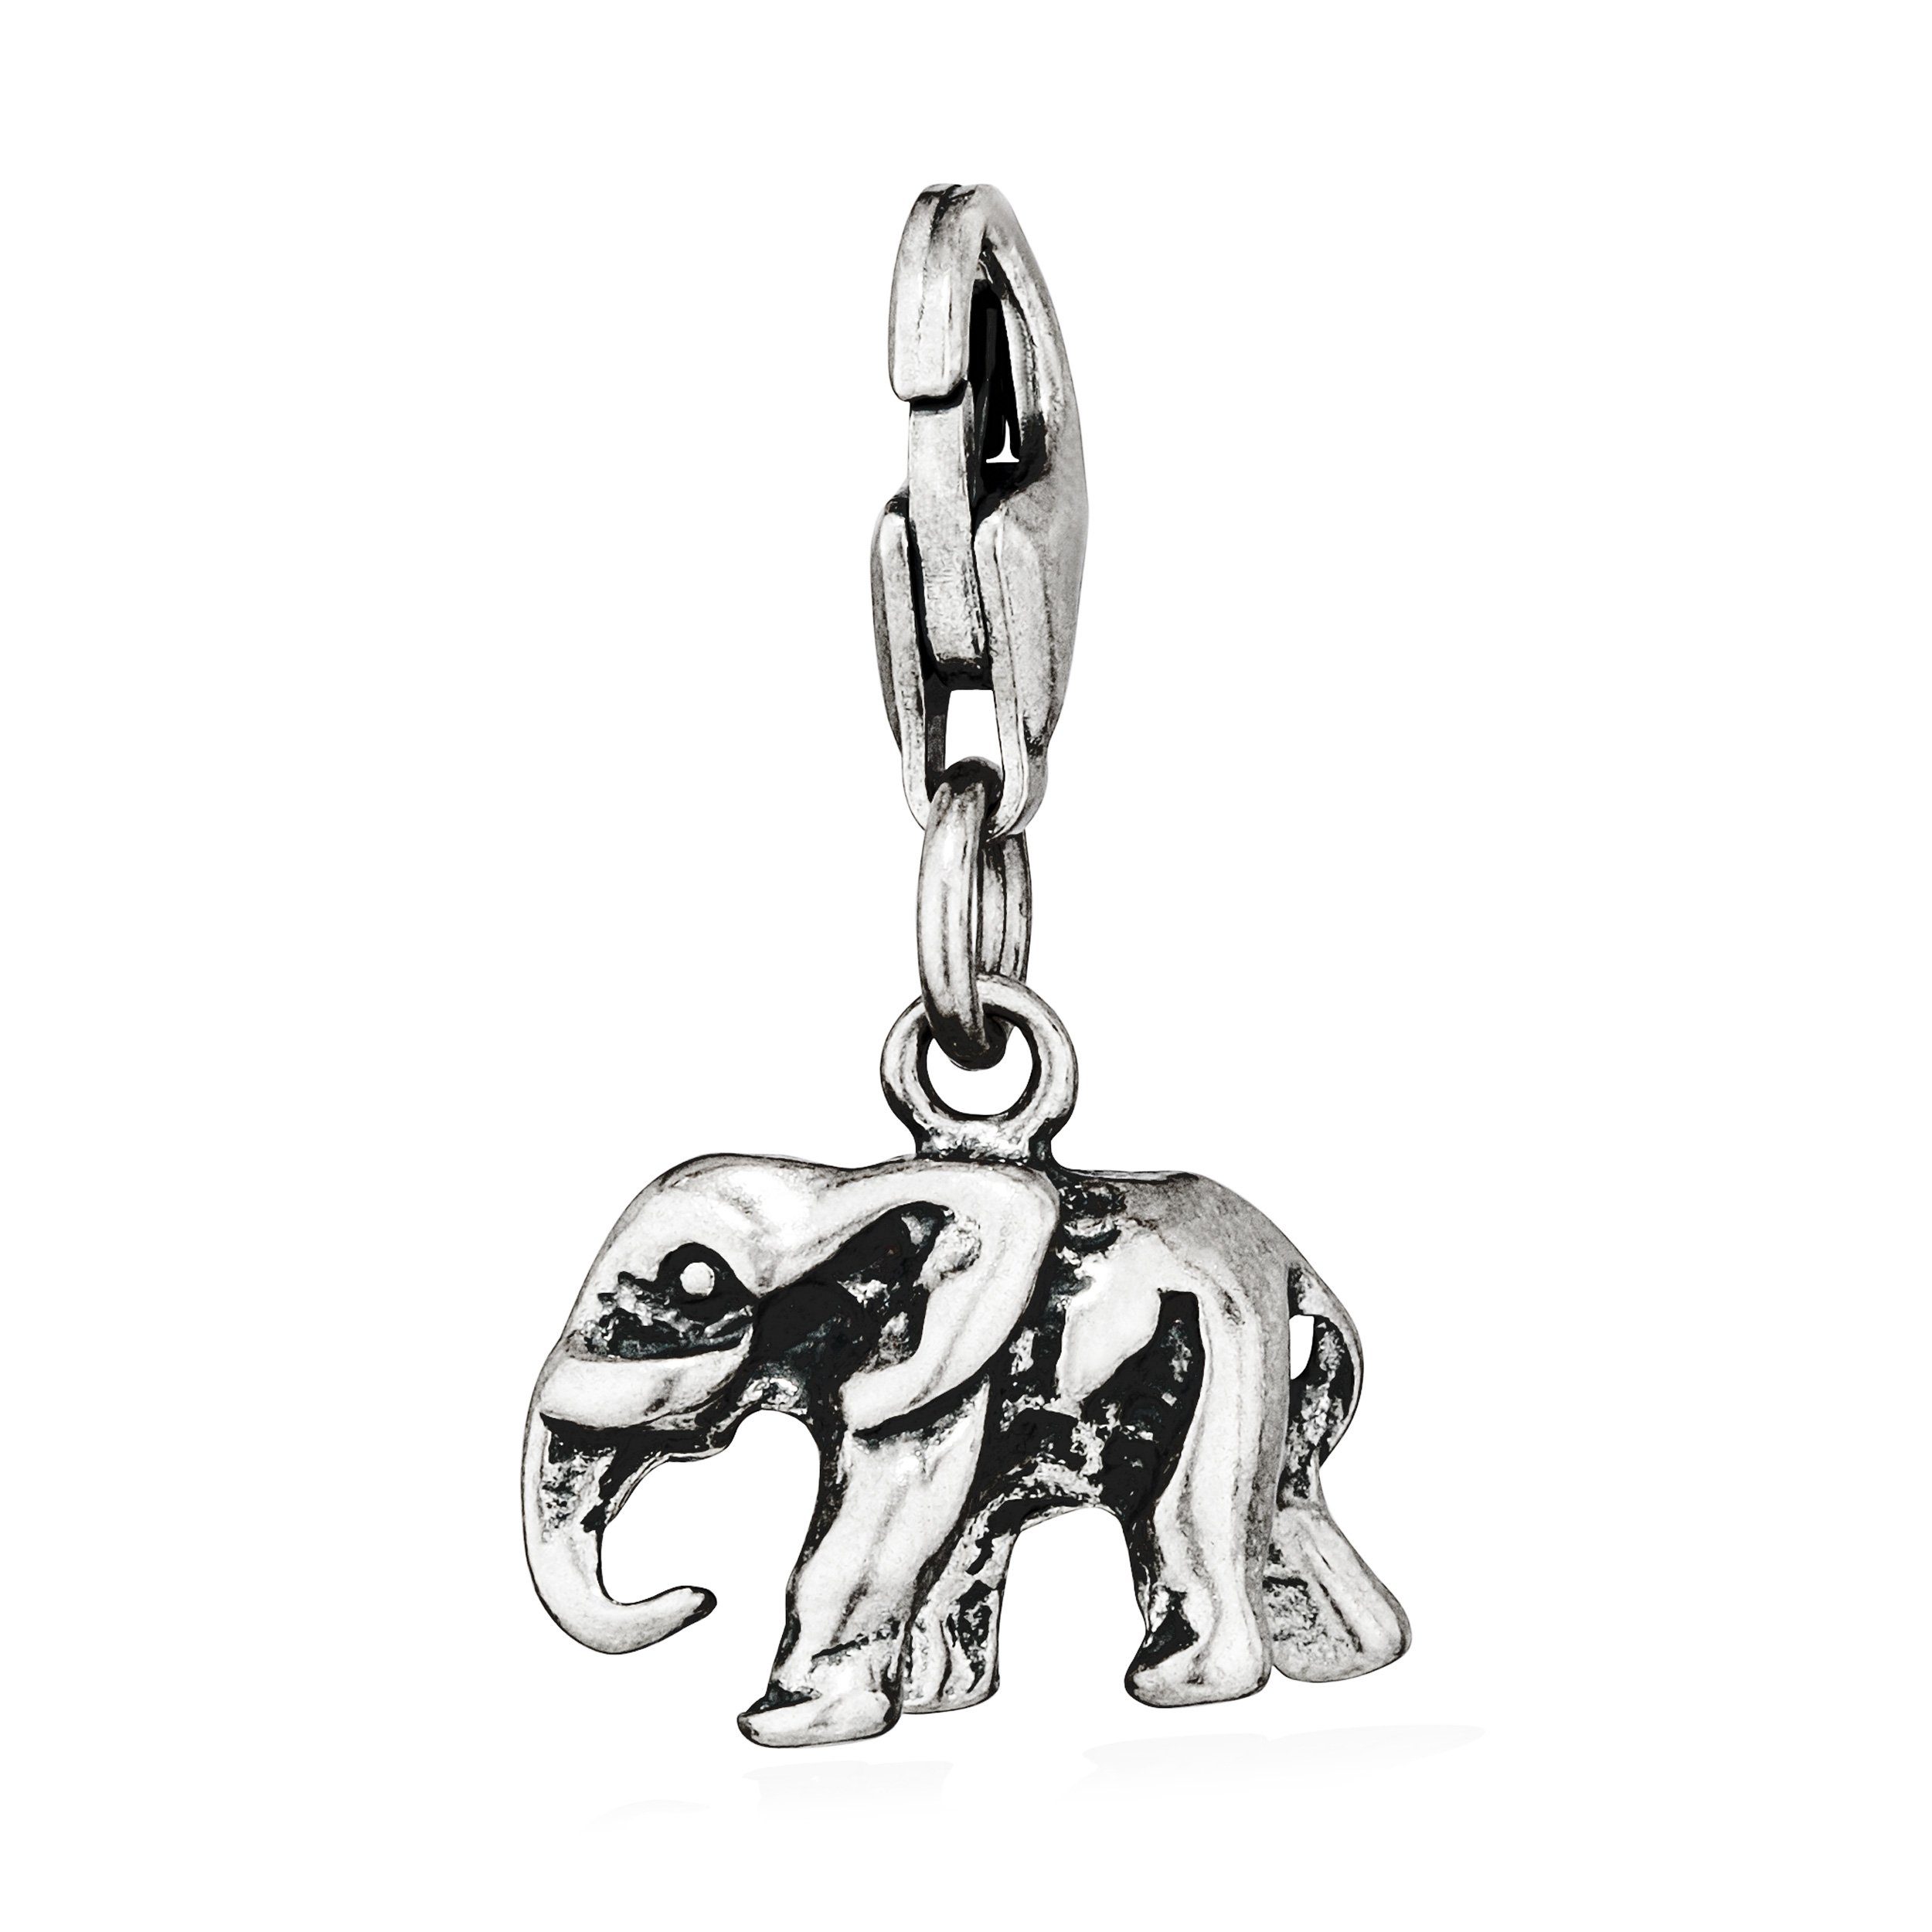 NKlaus Kettenanhänger Charm-Anhänger klein Elefant 925 Silber antik 10x13mm Silberanhänger A